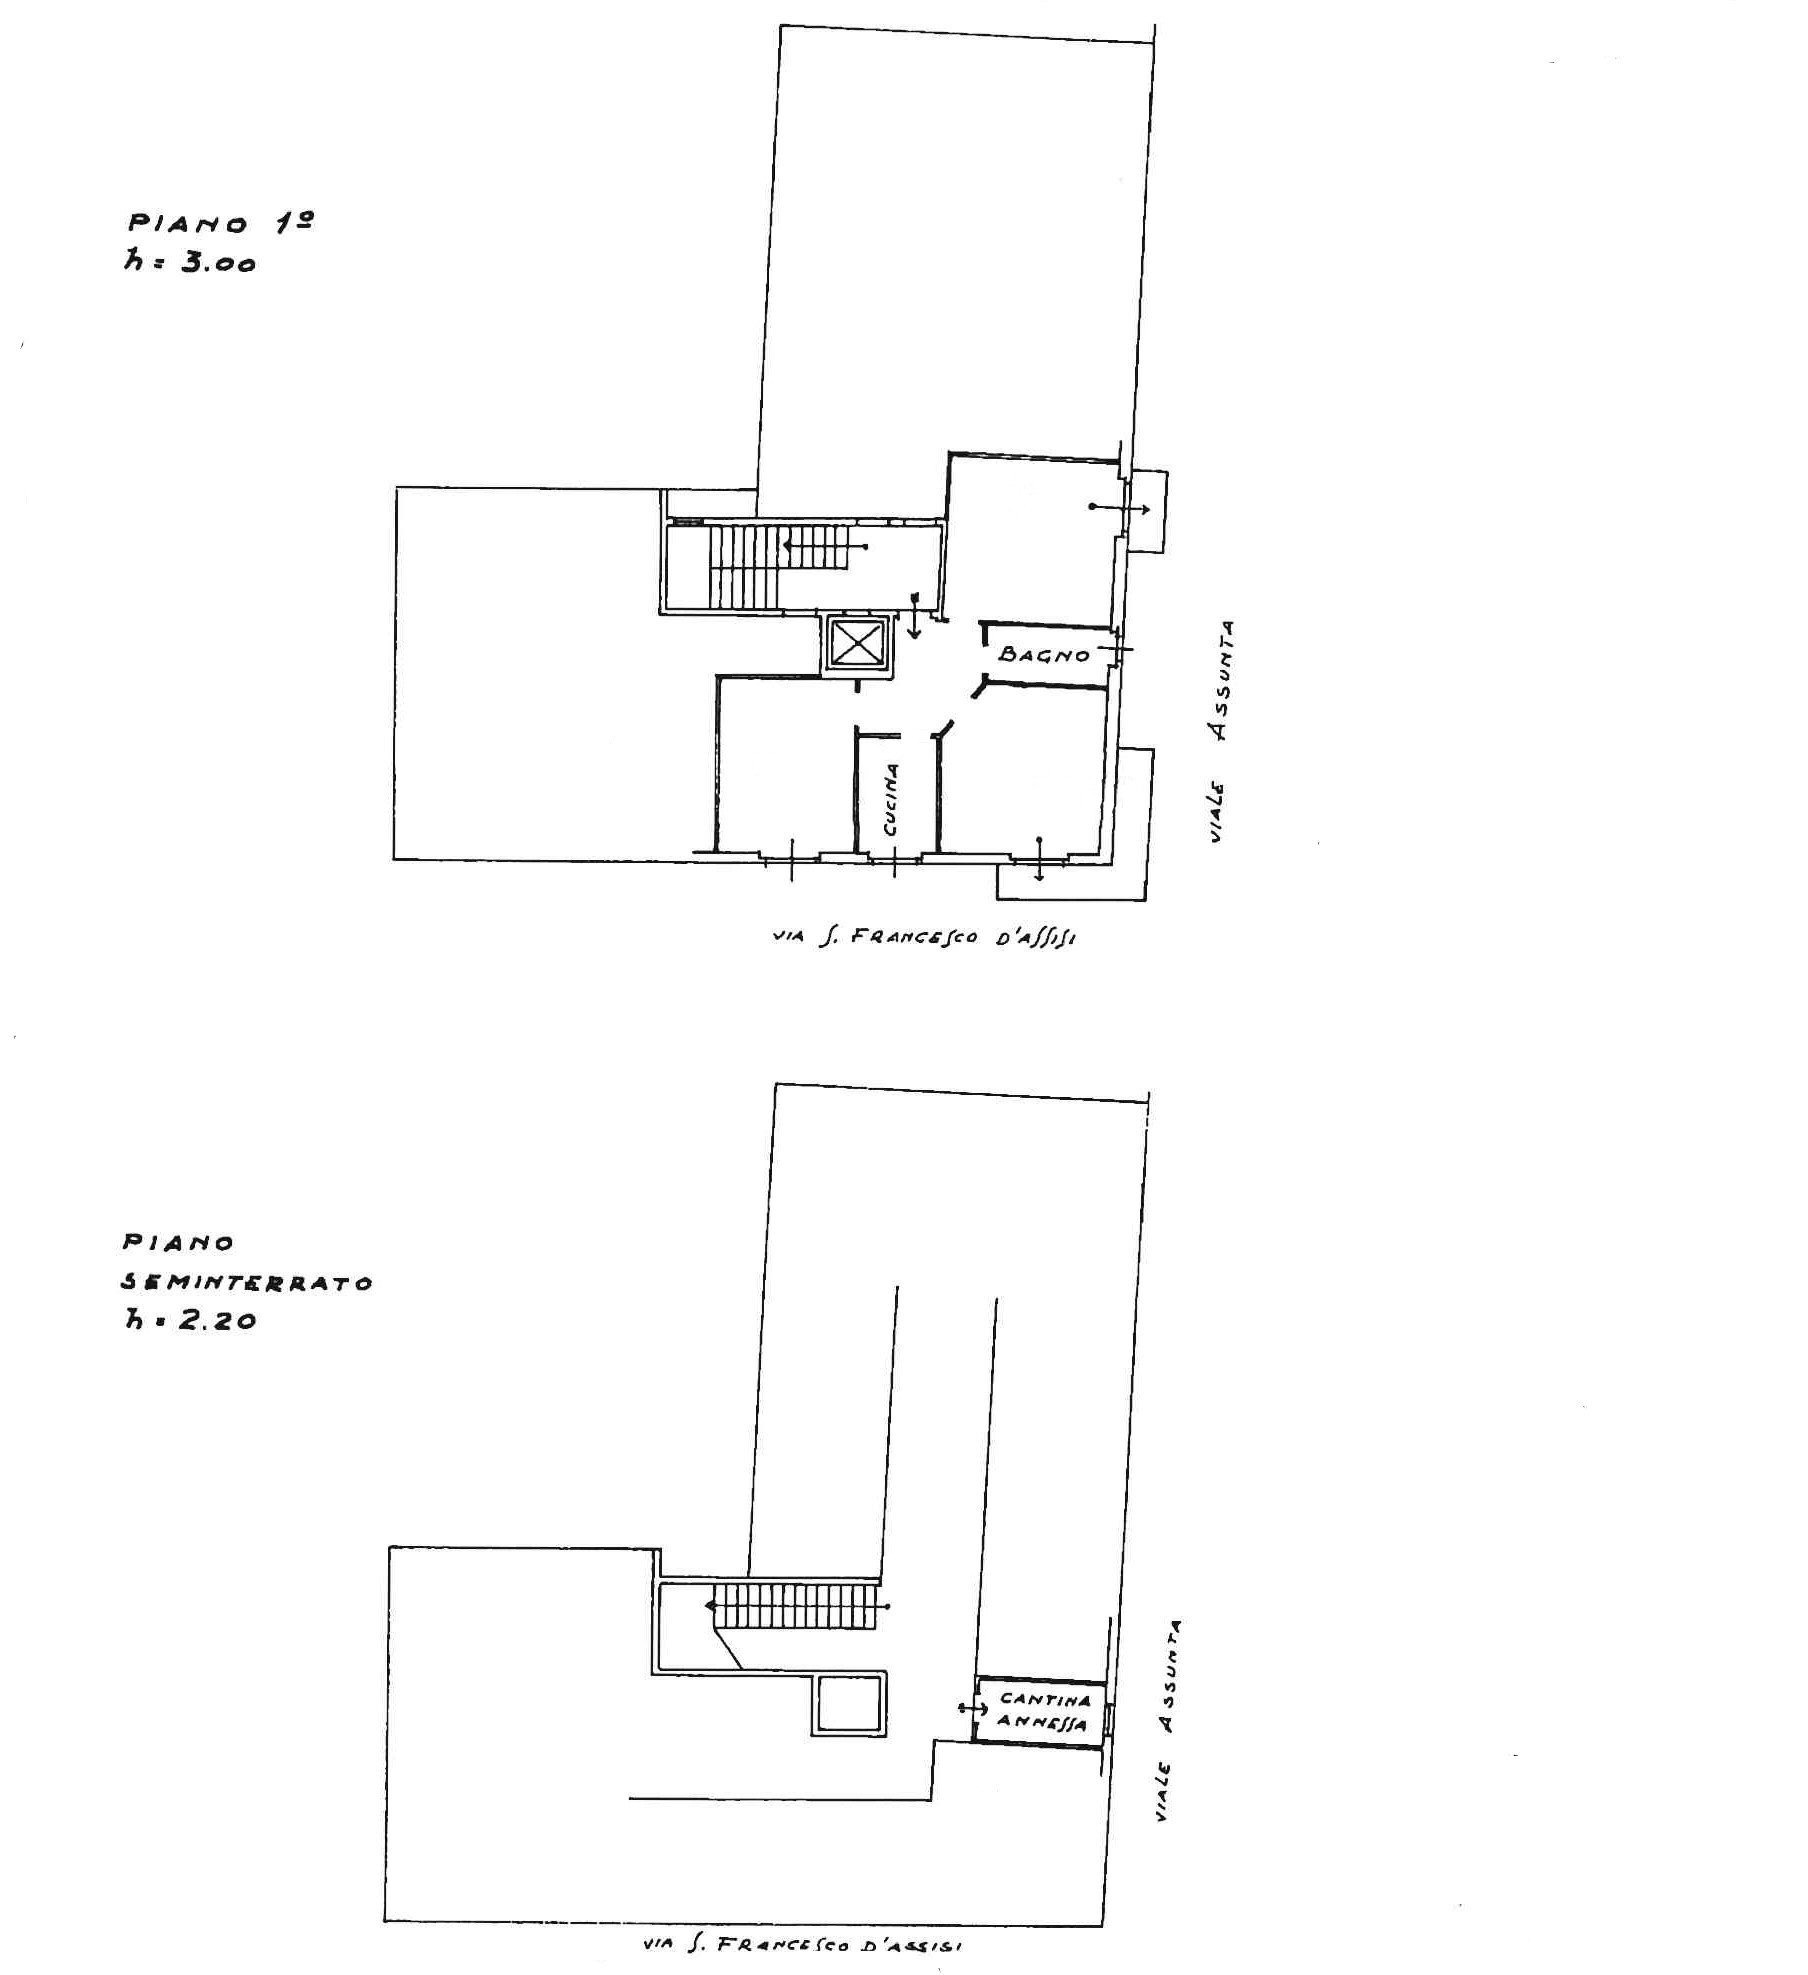 Vendita appartamento Cernusco sul Naviglio - immagine 23